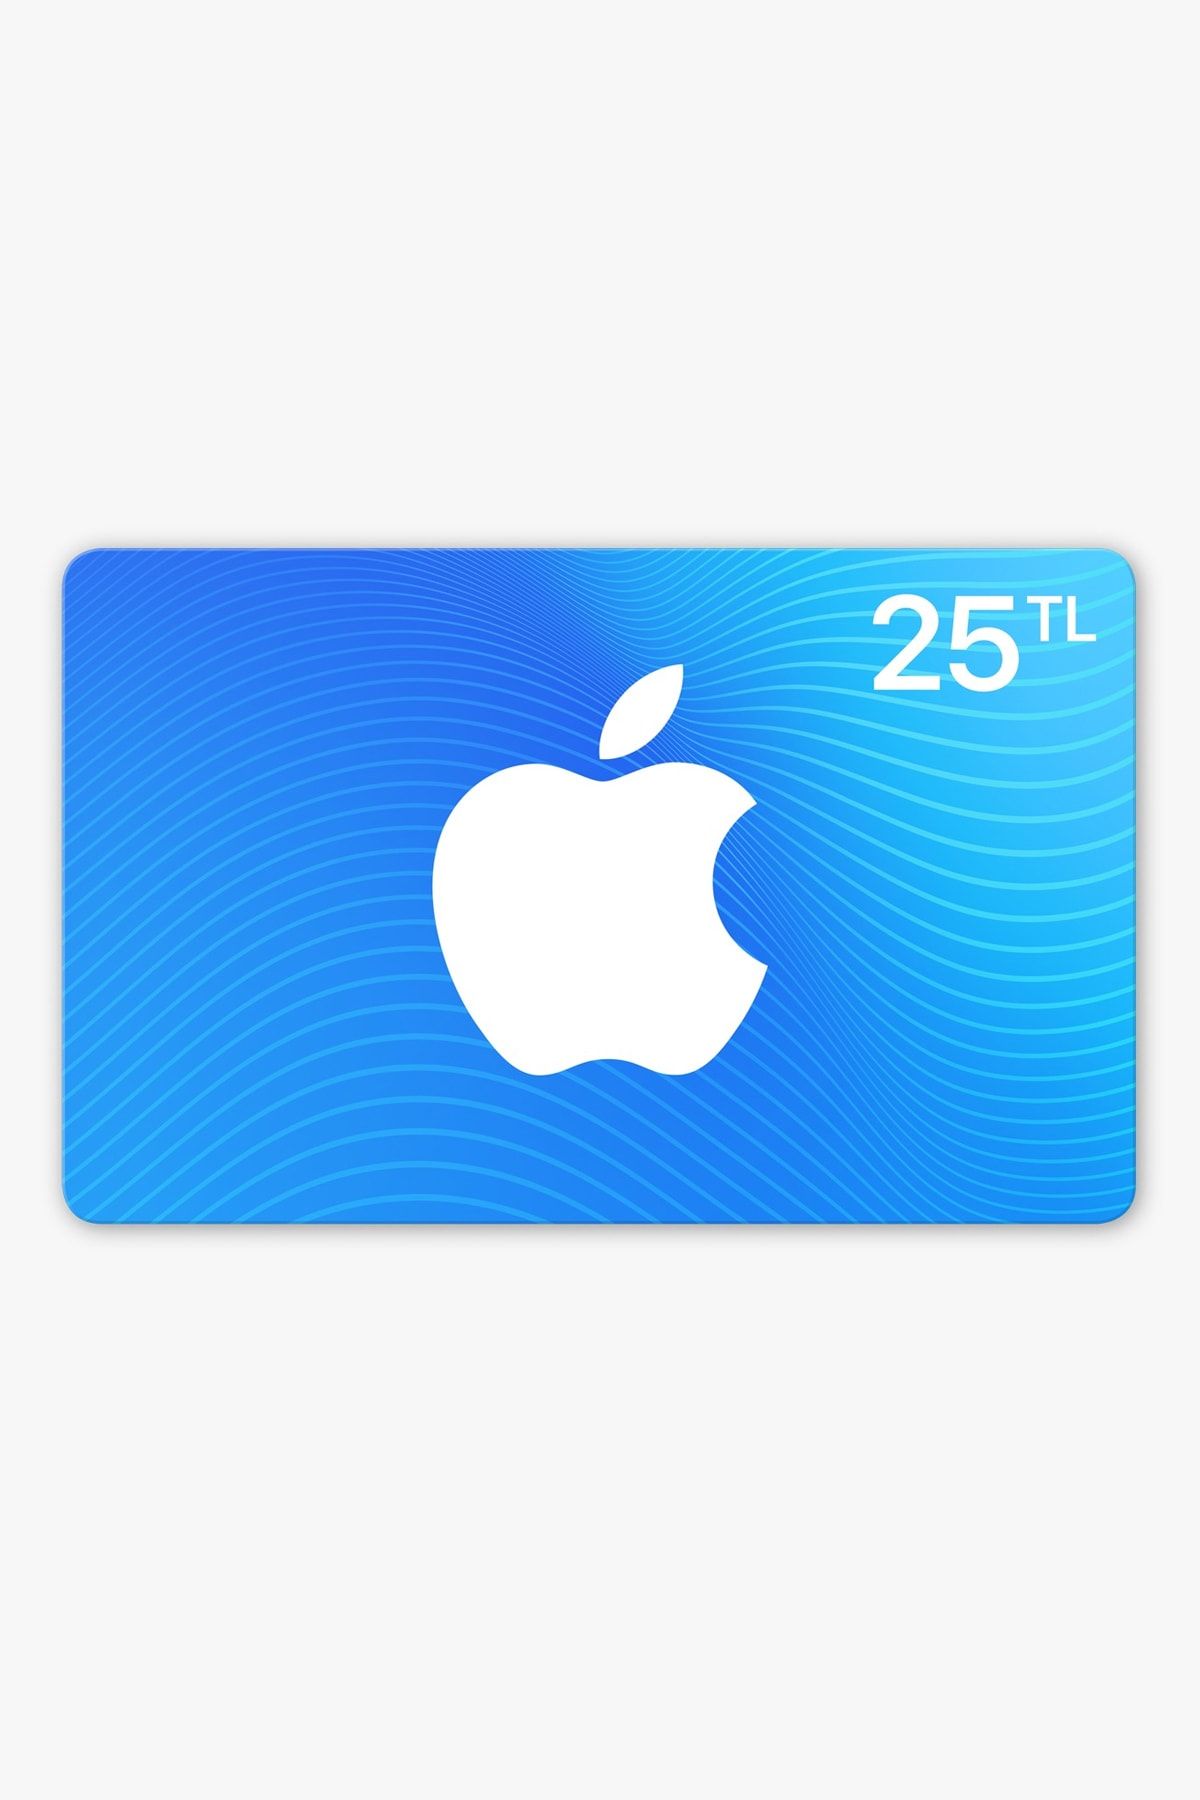 iTunes 25 TL Tutarında App Store & iTunes Hediye Kartı